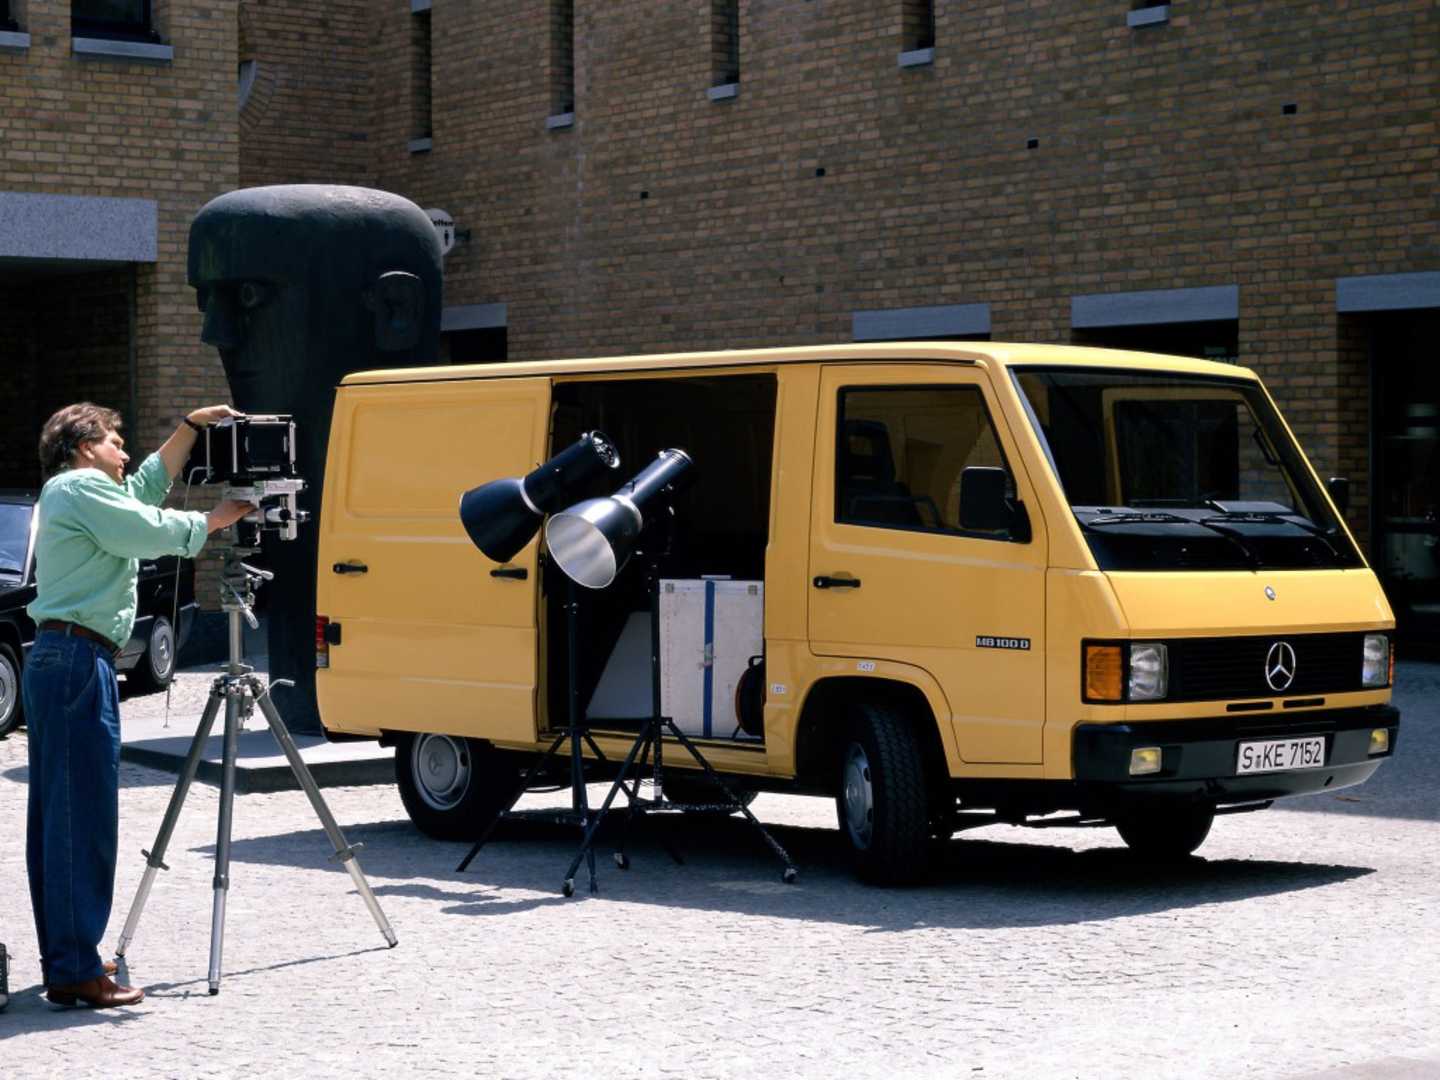 MB100 AMG jaune avec du matériel photos et vidéos à l'intérieur